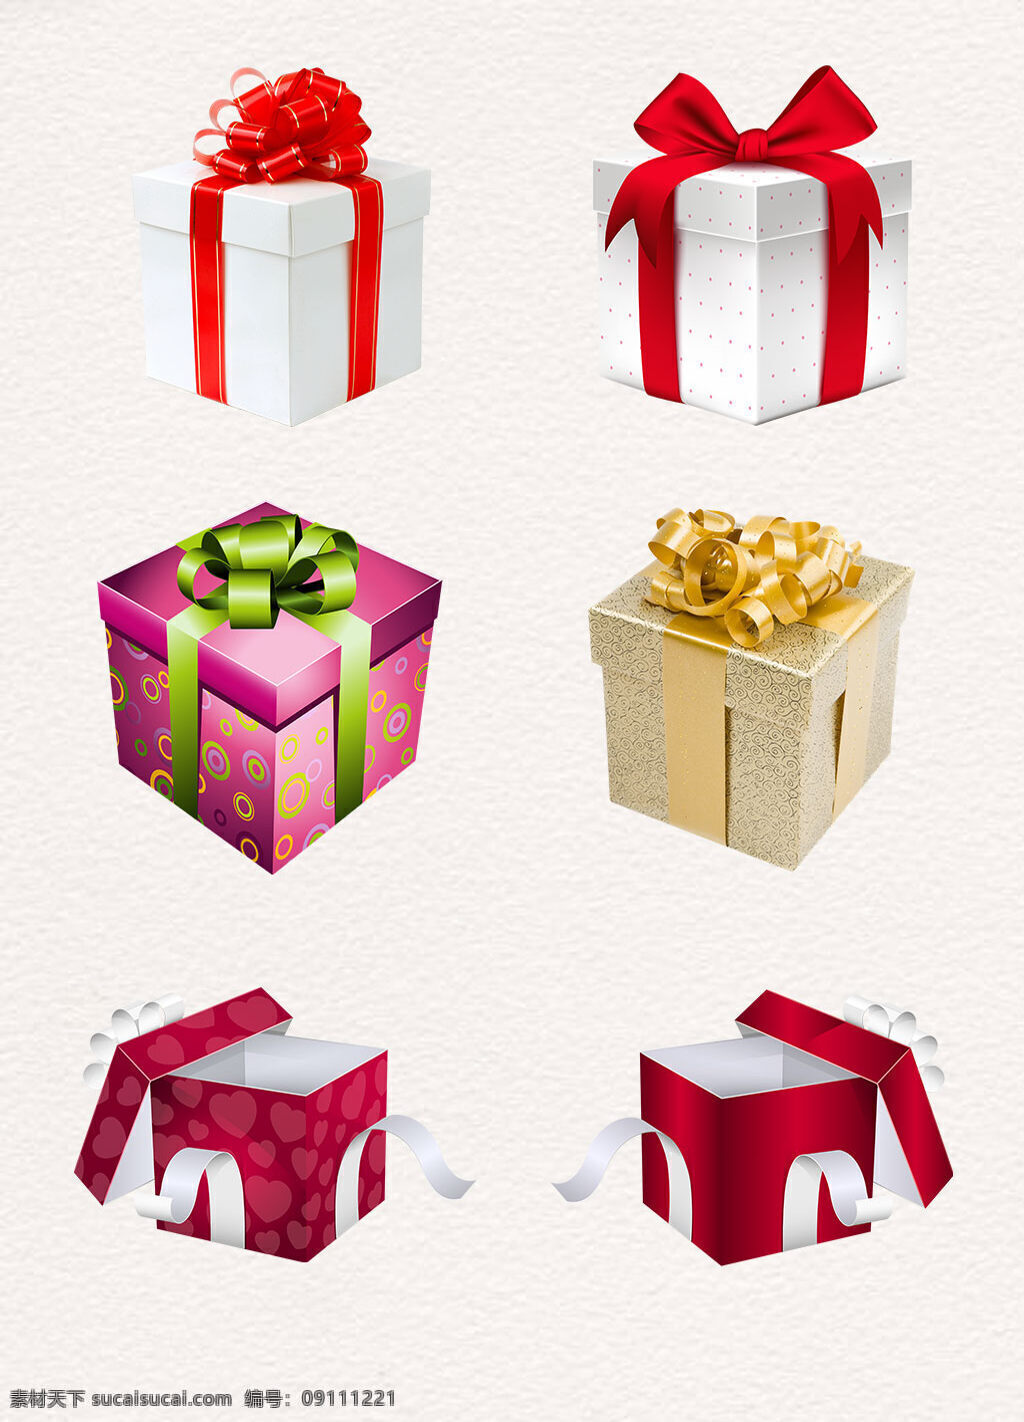 四方形 白色 打开 礼盒 矢量素材 丝带 装饰 设计素材 打开的礼盒 红色丝带 节日礼盒 包装礼盒